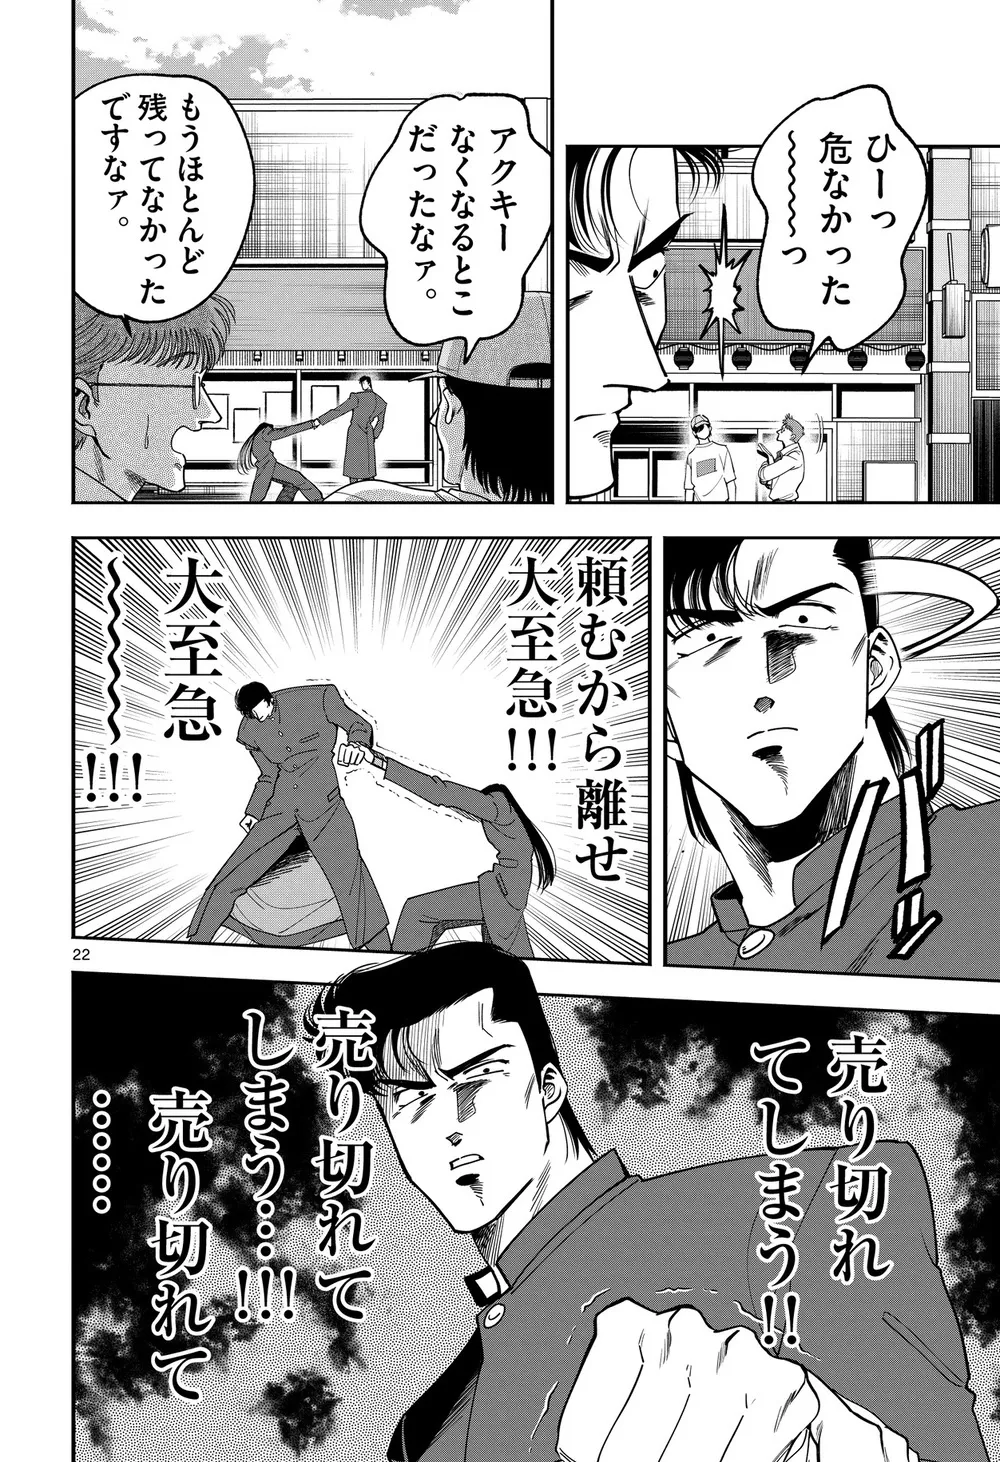 『限界!推し活伝説 YOSHIO』(21/38)